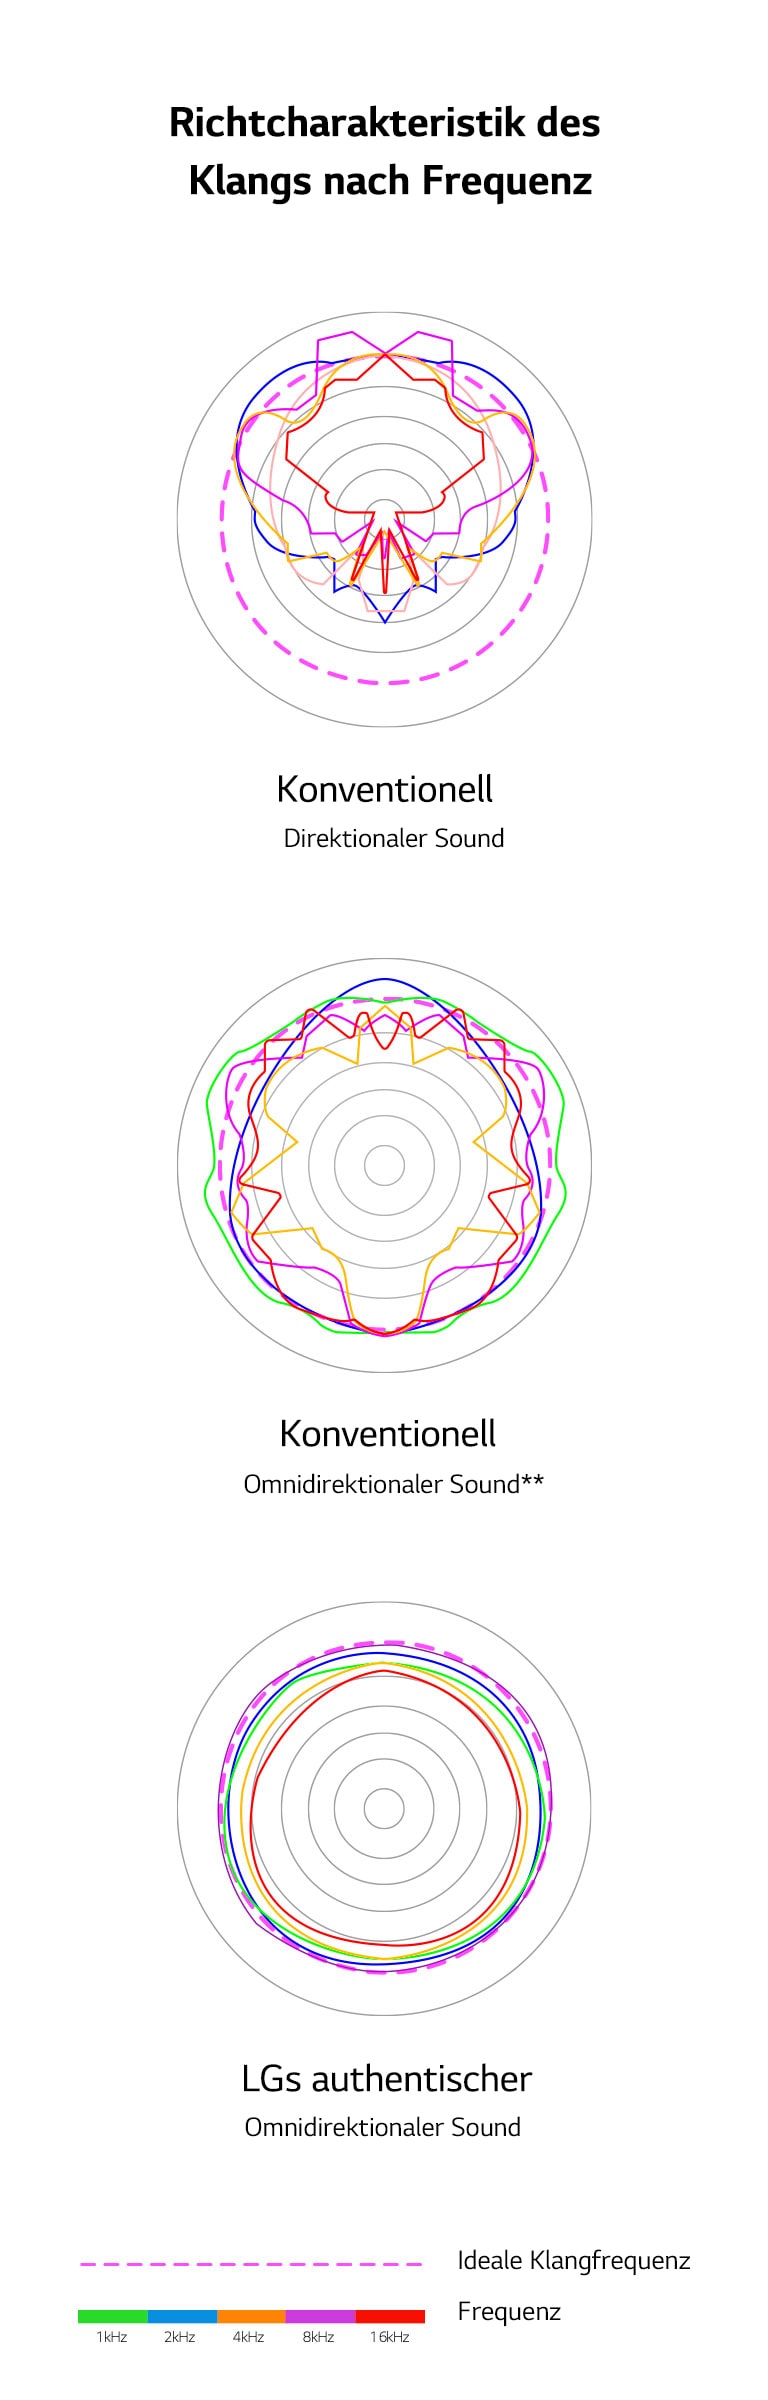 Ein Bild, das die Schallwellenlängen von konventionellem direktionalem Sound und konventionellem omnidirektionalem Sound mit den Klangwellenlängen des authentischen omnidirektionalen Sounds von LG vergleicht.